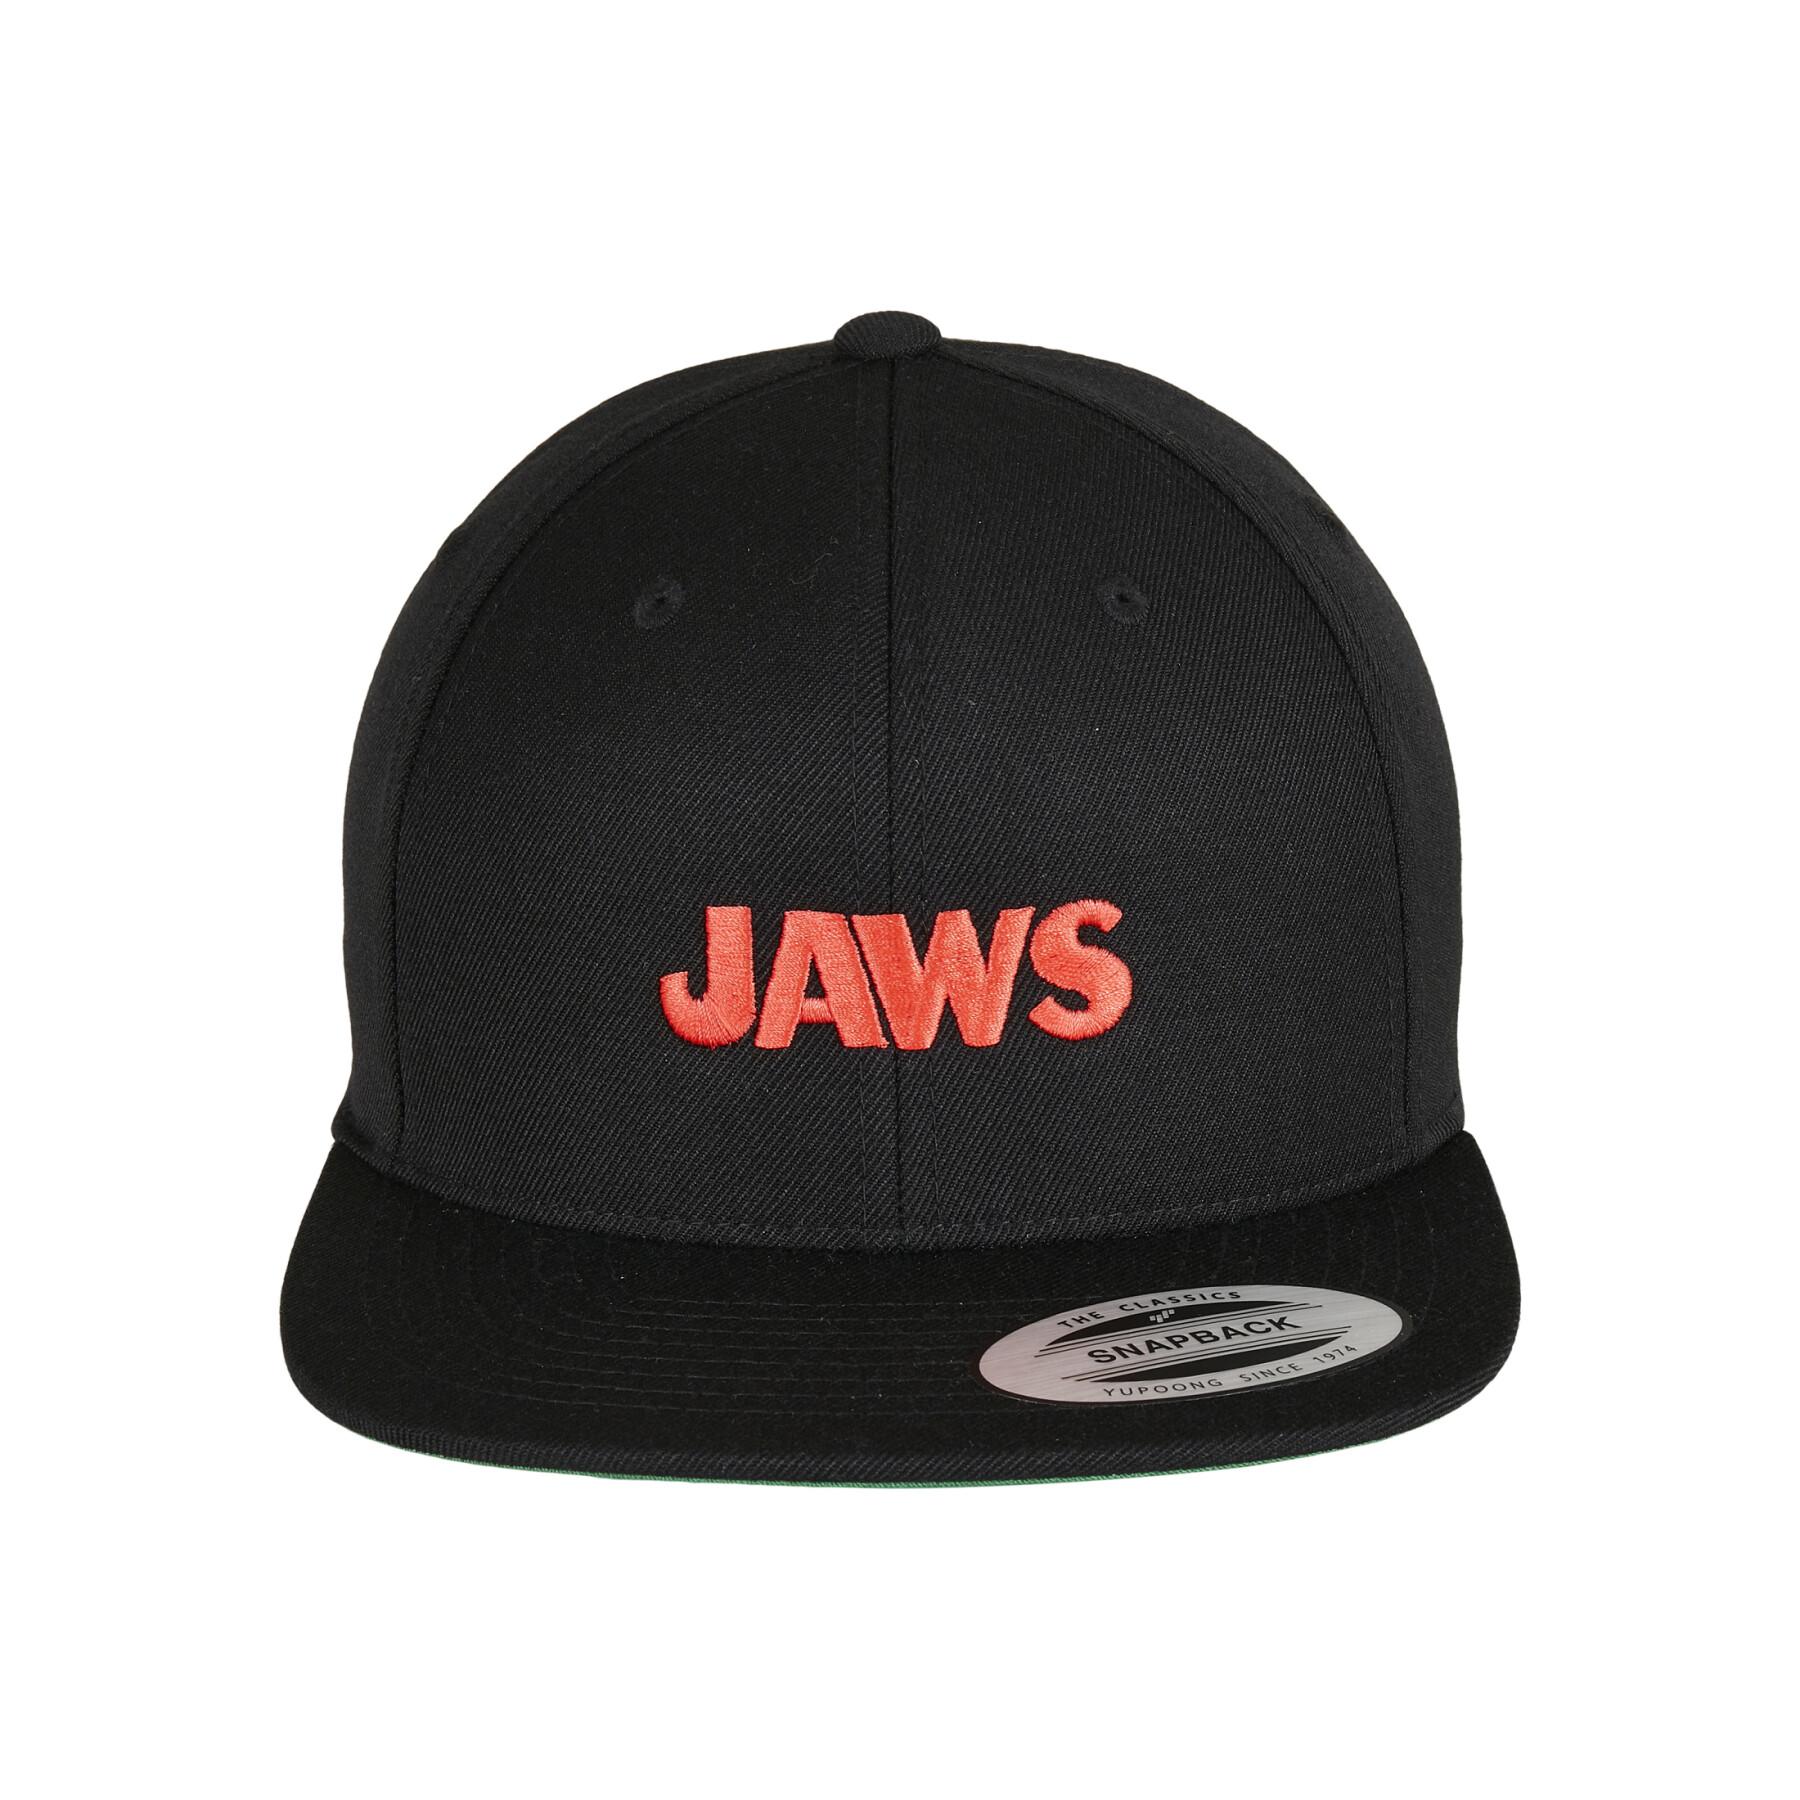 Cap Urban Classics jaws logo